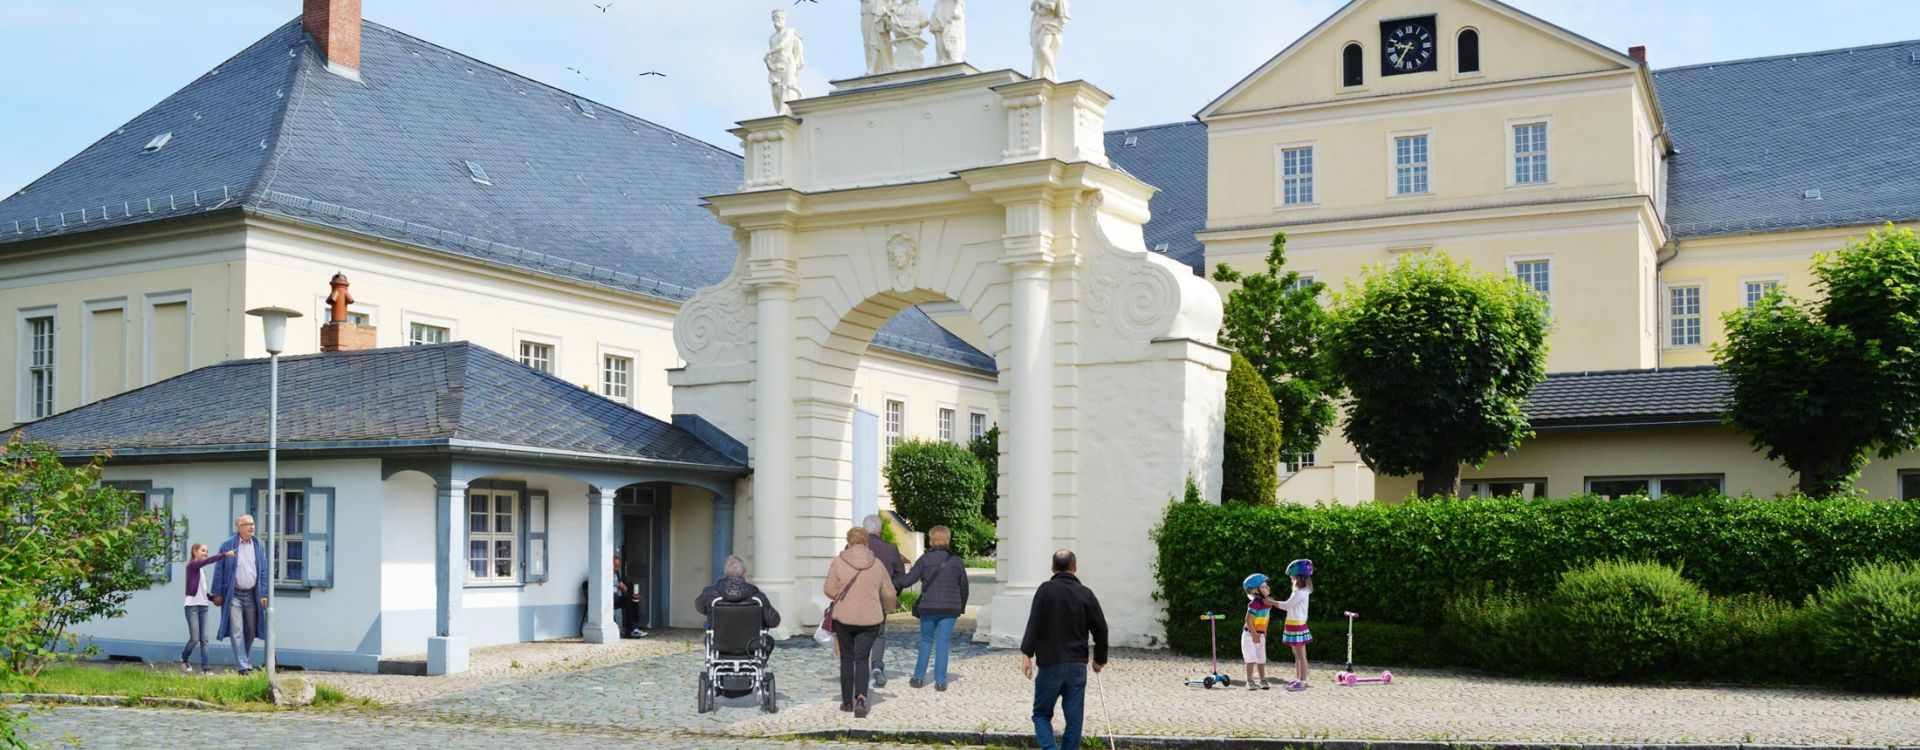 Portal der Schloss Hoym Stiftung